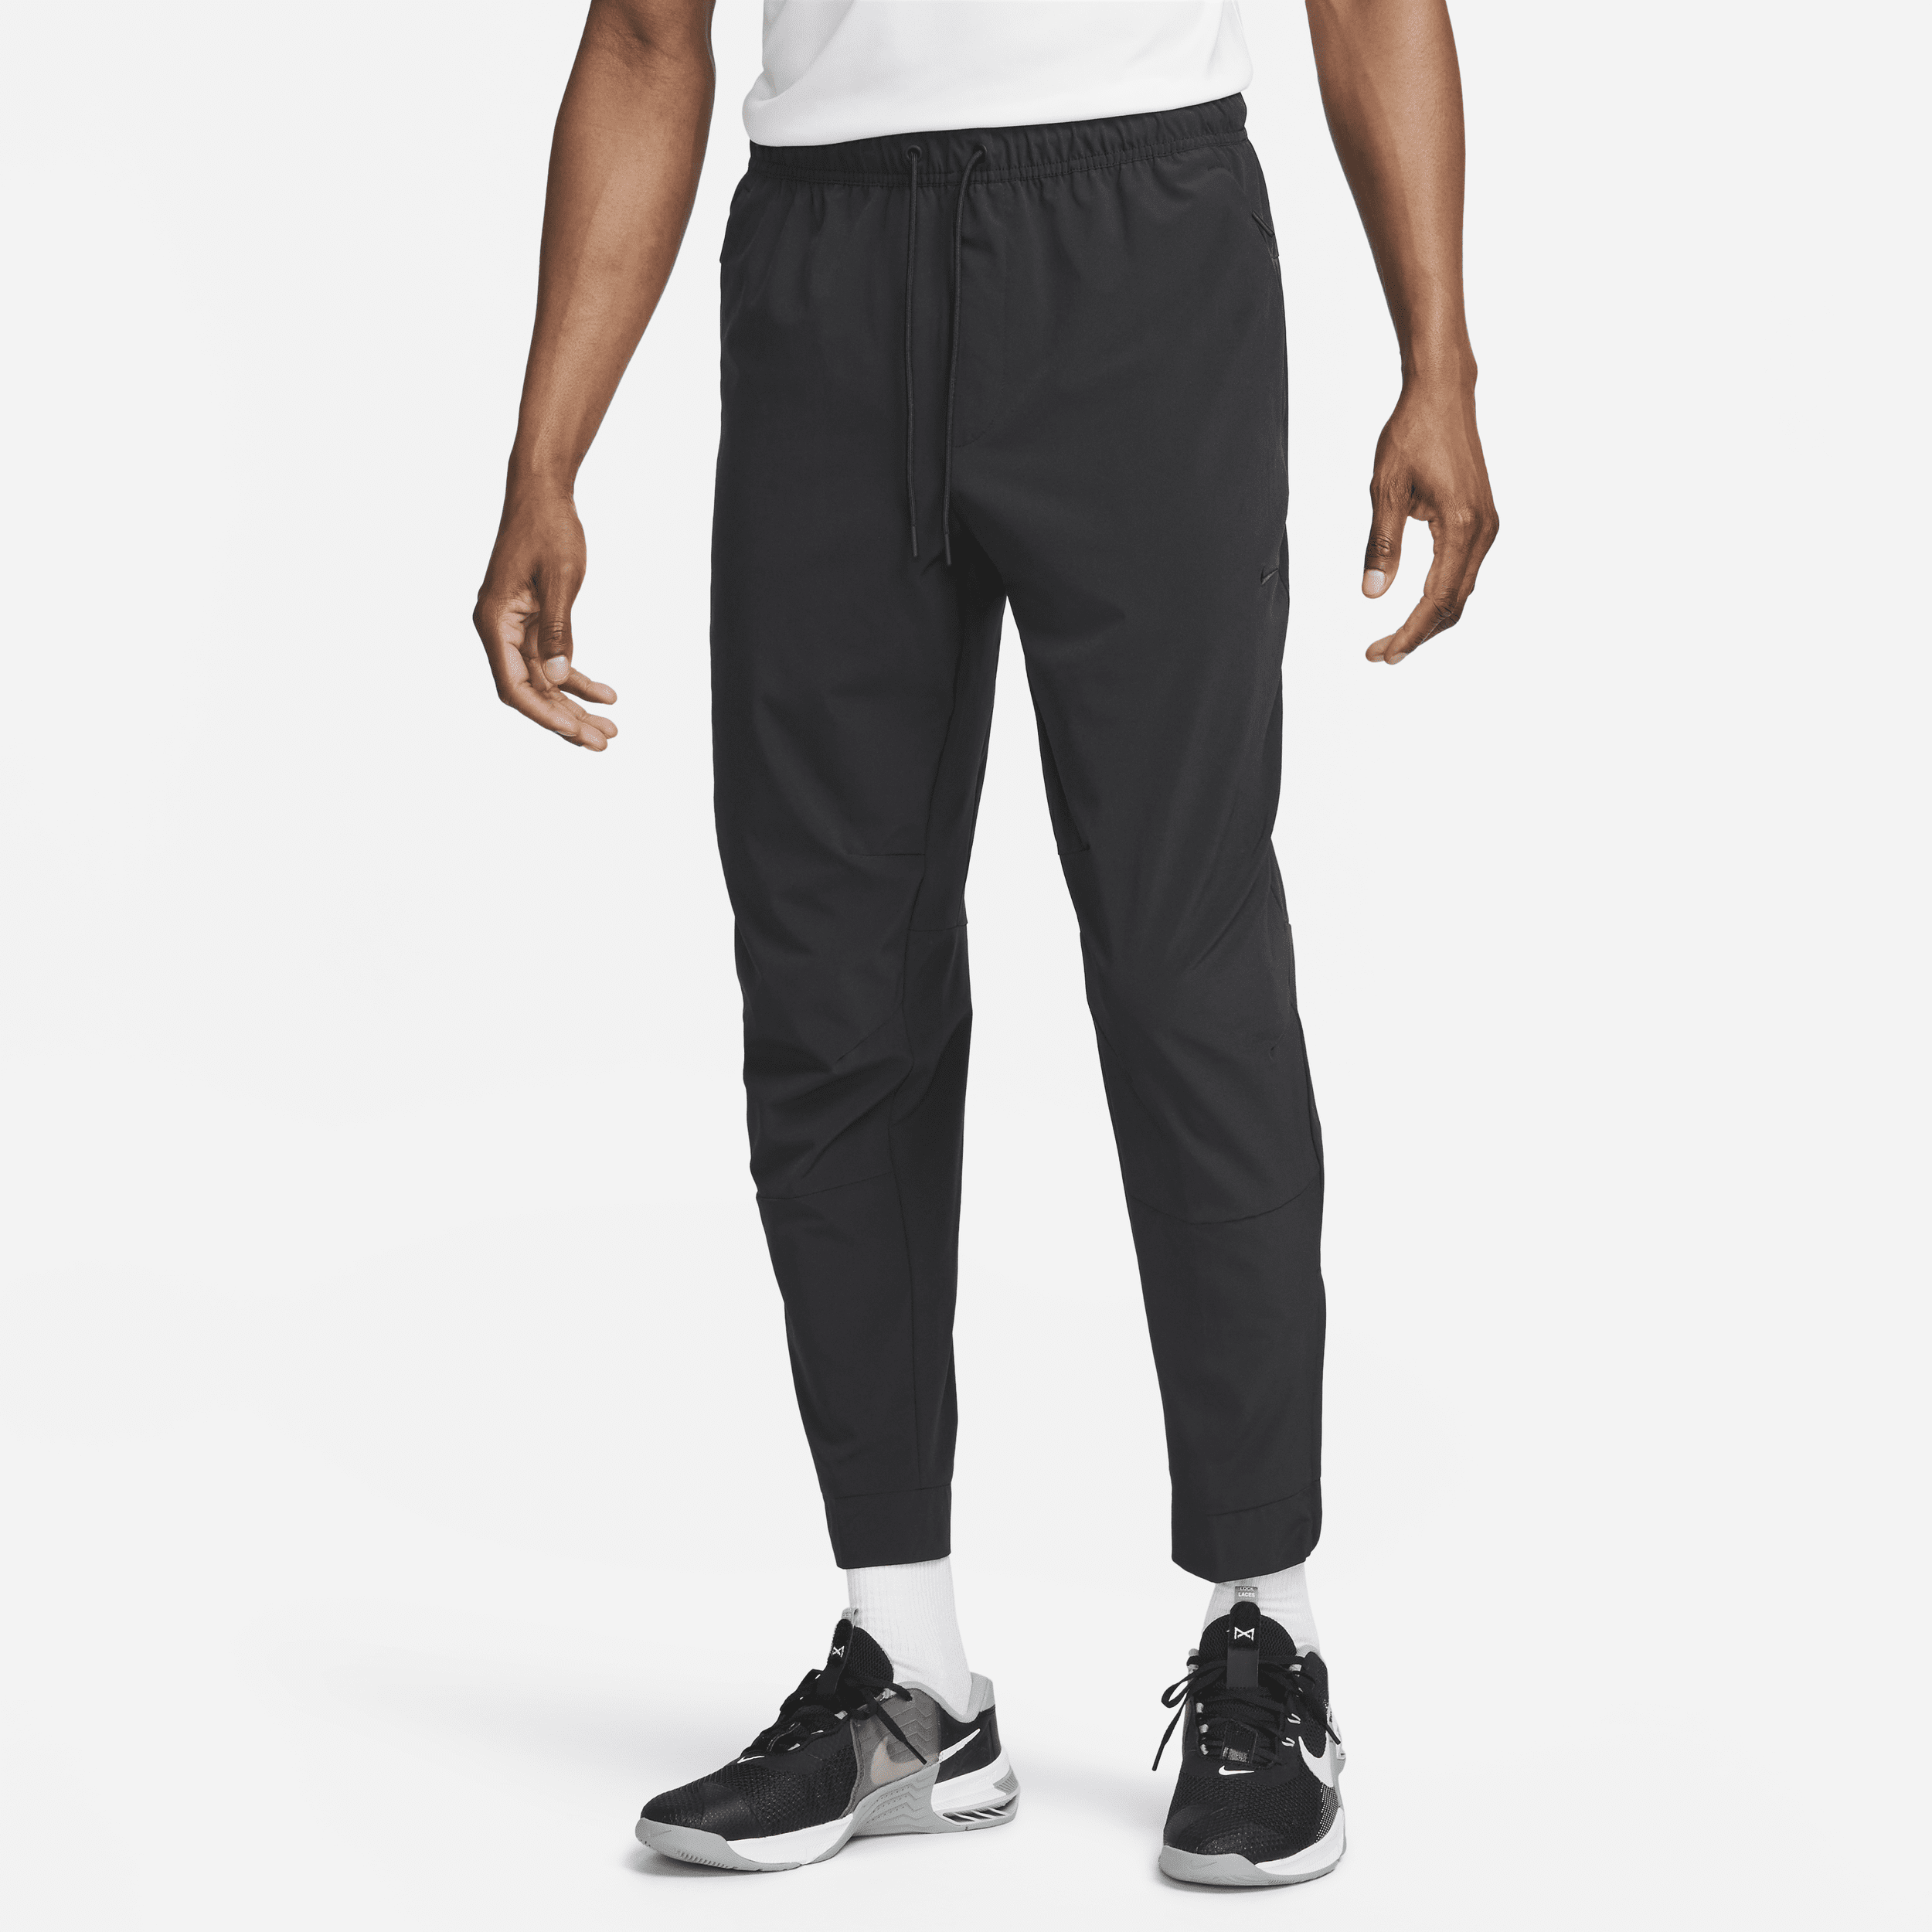 Nike Unlimited Pantalón versátil con bajos con cremallera Dri-FIT ADV - Hombre - Negro